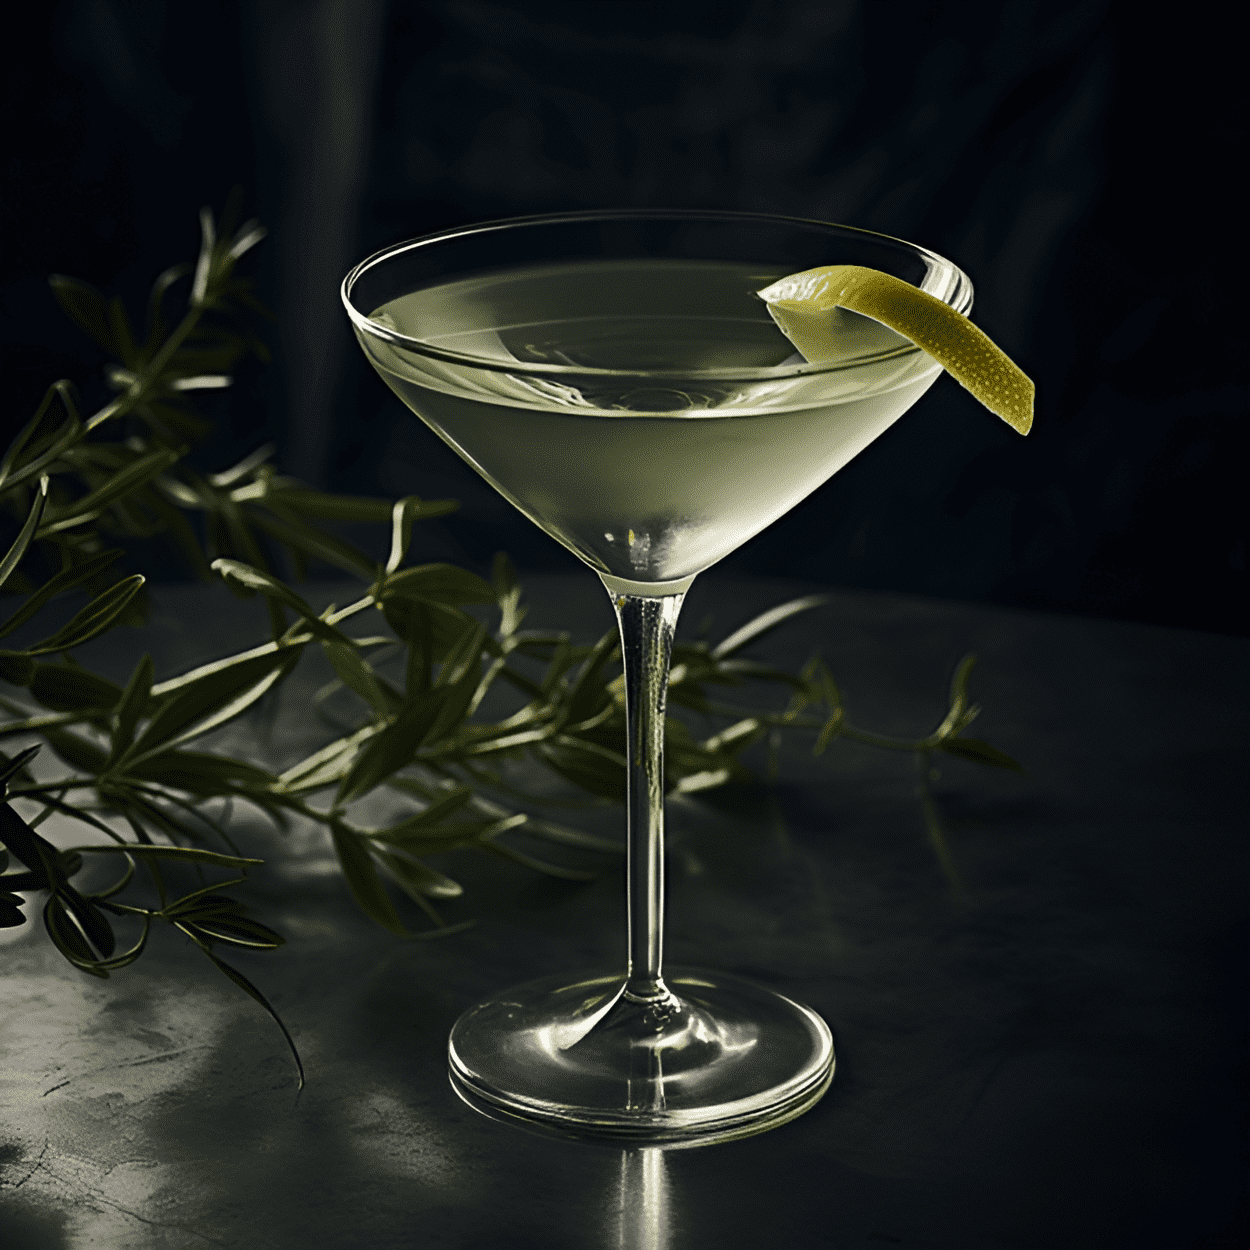 Vesper Martini Cóctel Receta - El Vesper Martini tiene un sabor fuerte, audaz y ligeramente amargo con un acabado suave y sedoso. La combinación de ginebra, vodka y Lillet Blanc crea un perfil de sabor complejo y bien equilibrado que es refrescante y vigorizante.